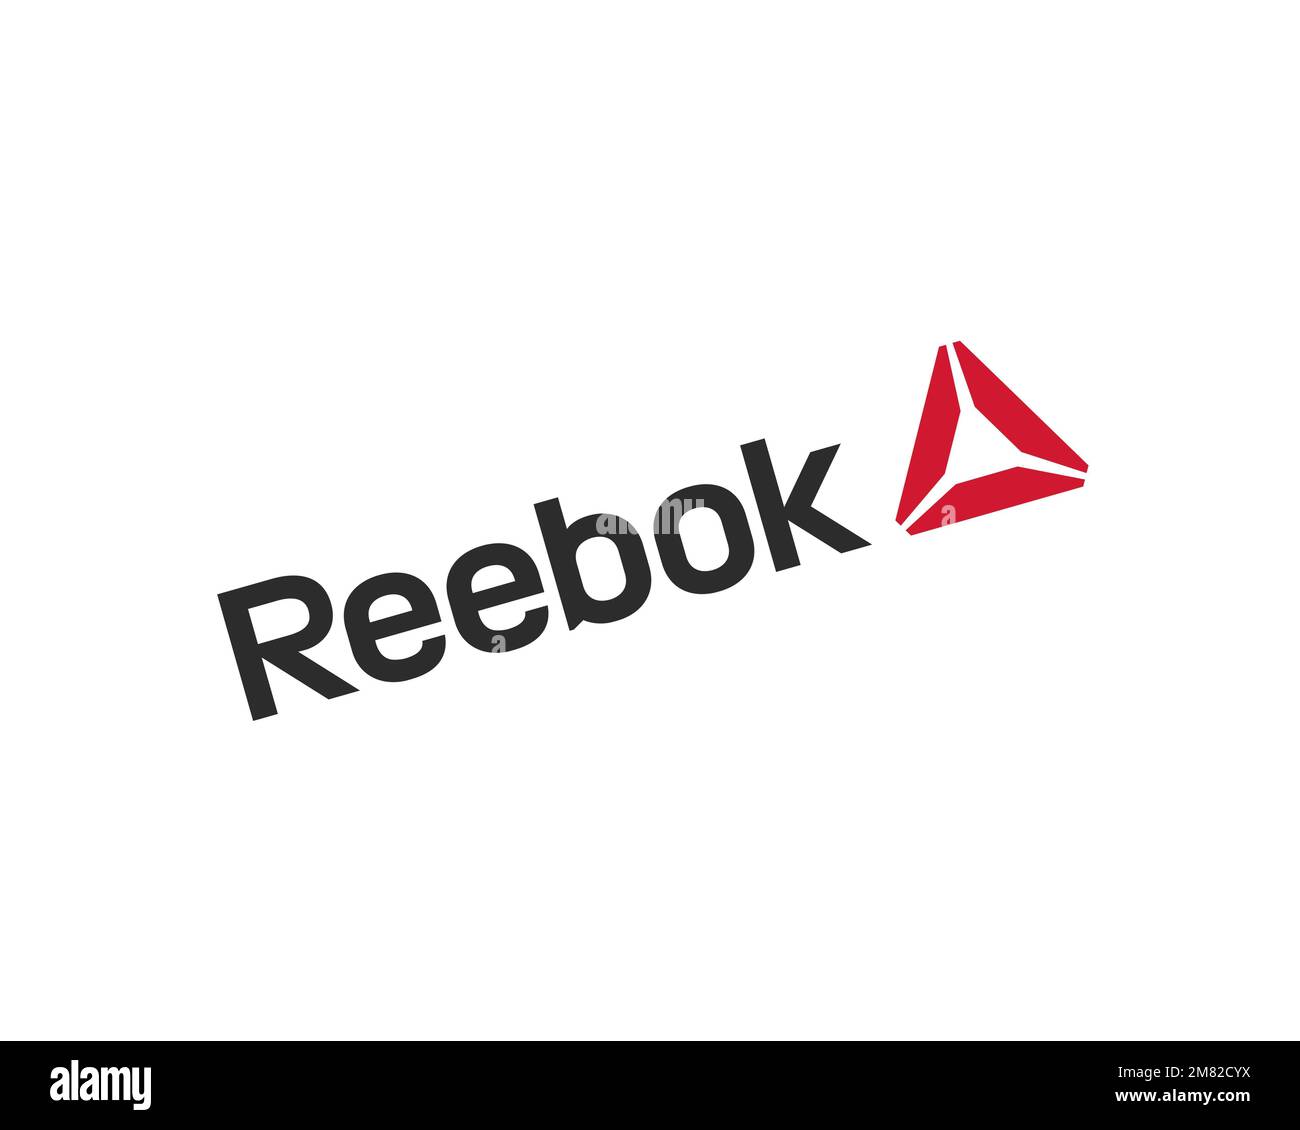 Reebok, logo pivoté, arrière-plan blanc Photo Stock - Alamy